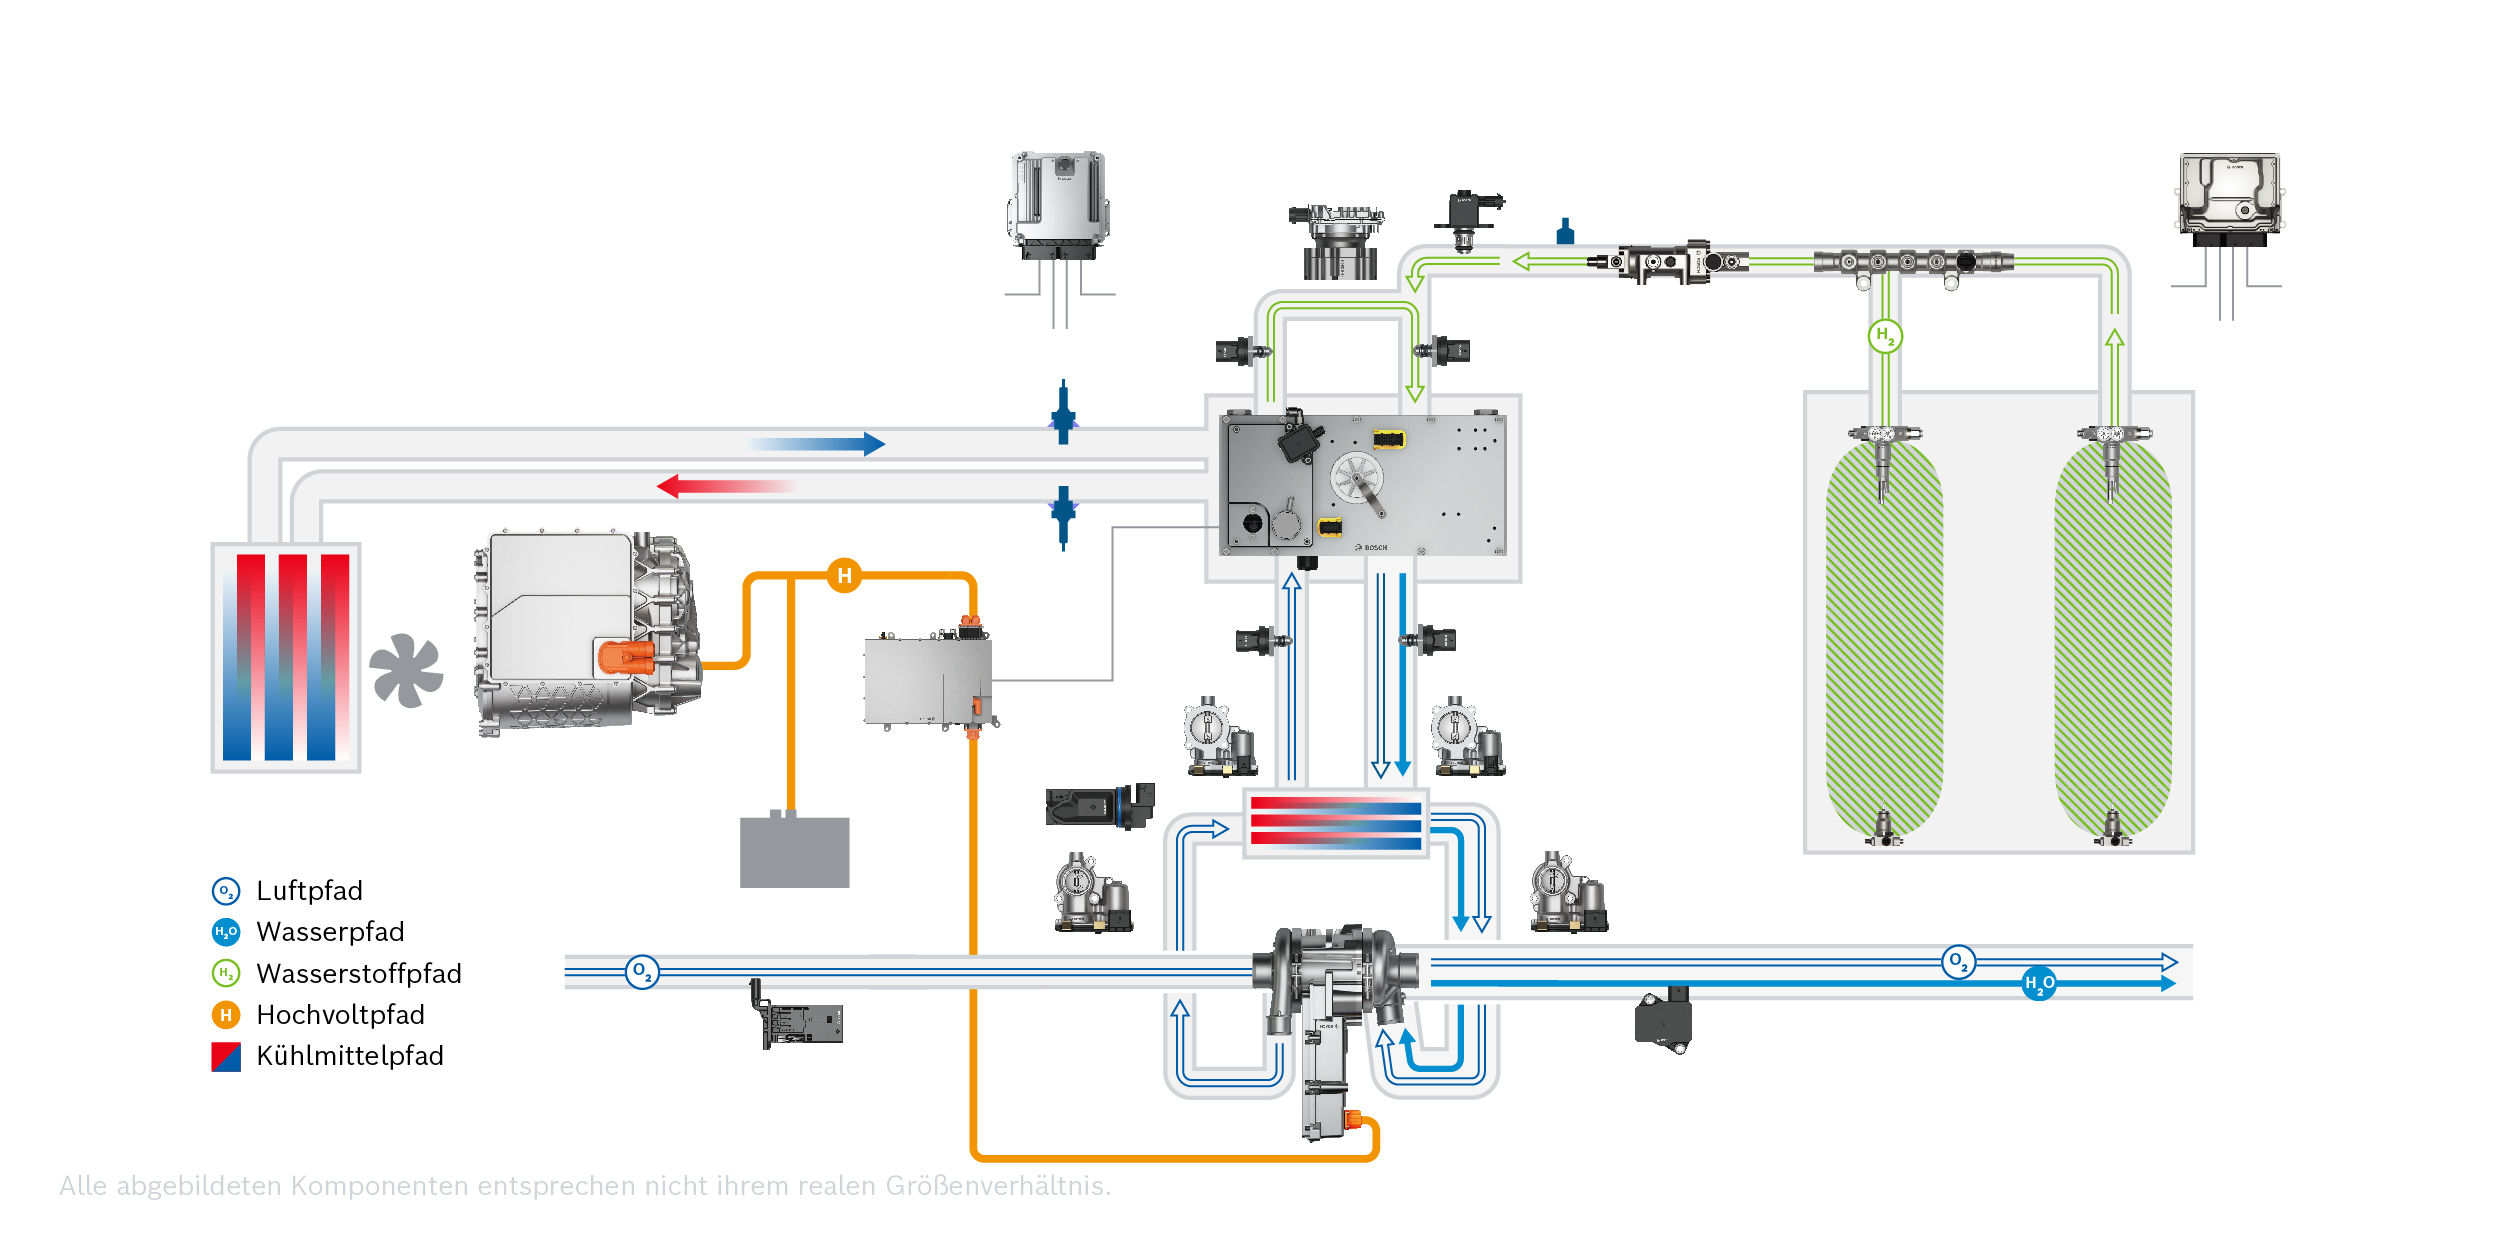 Darstellung Wasserstoffpfad eines Brennstoffzellensystems